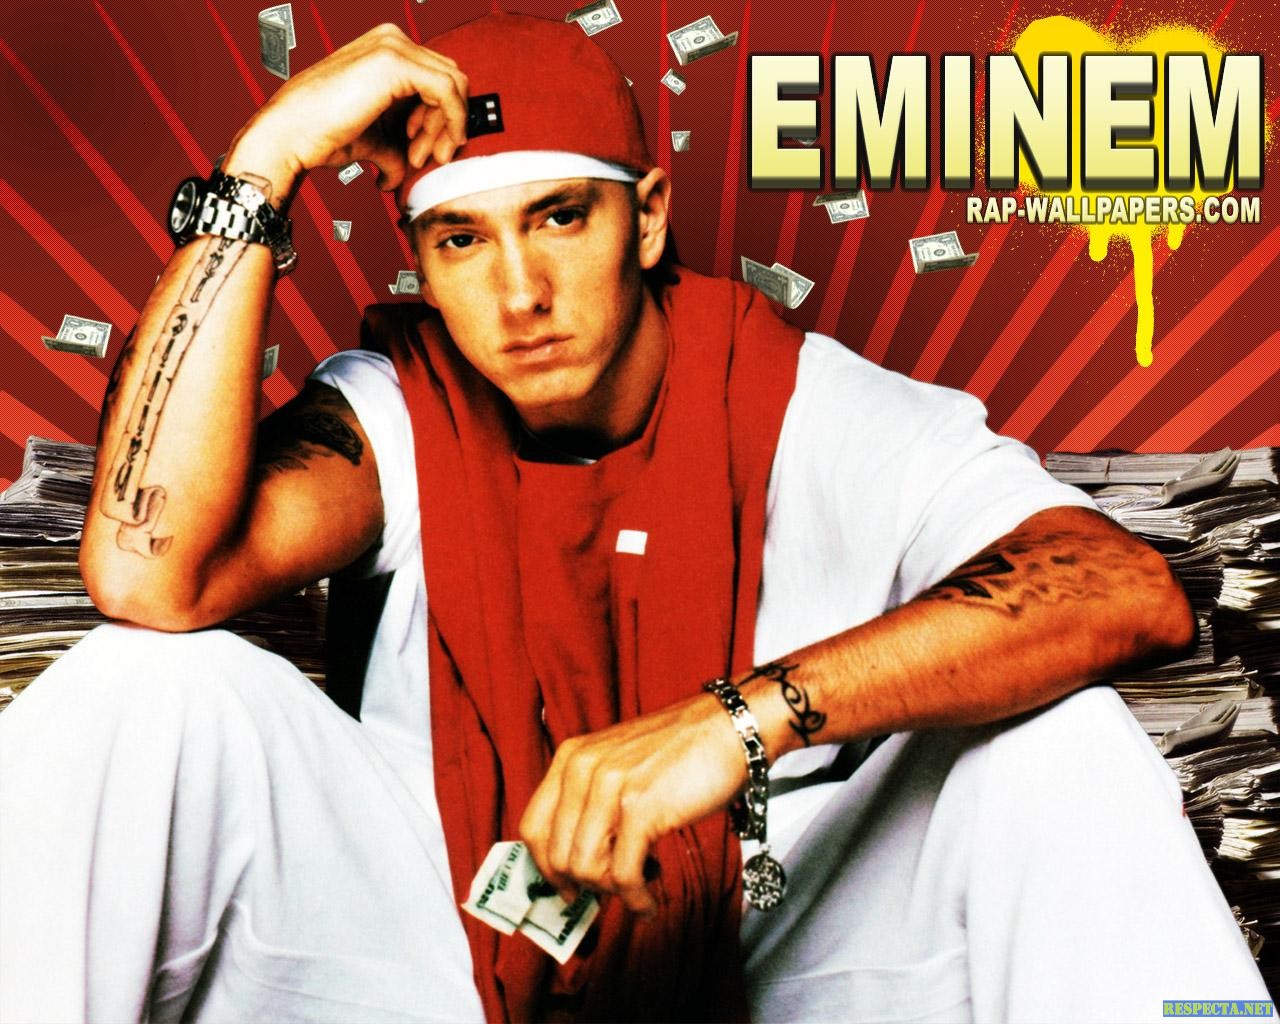 COOL IMAGES: Eminem wallpaper